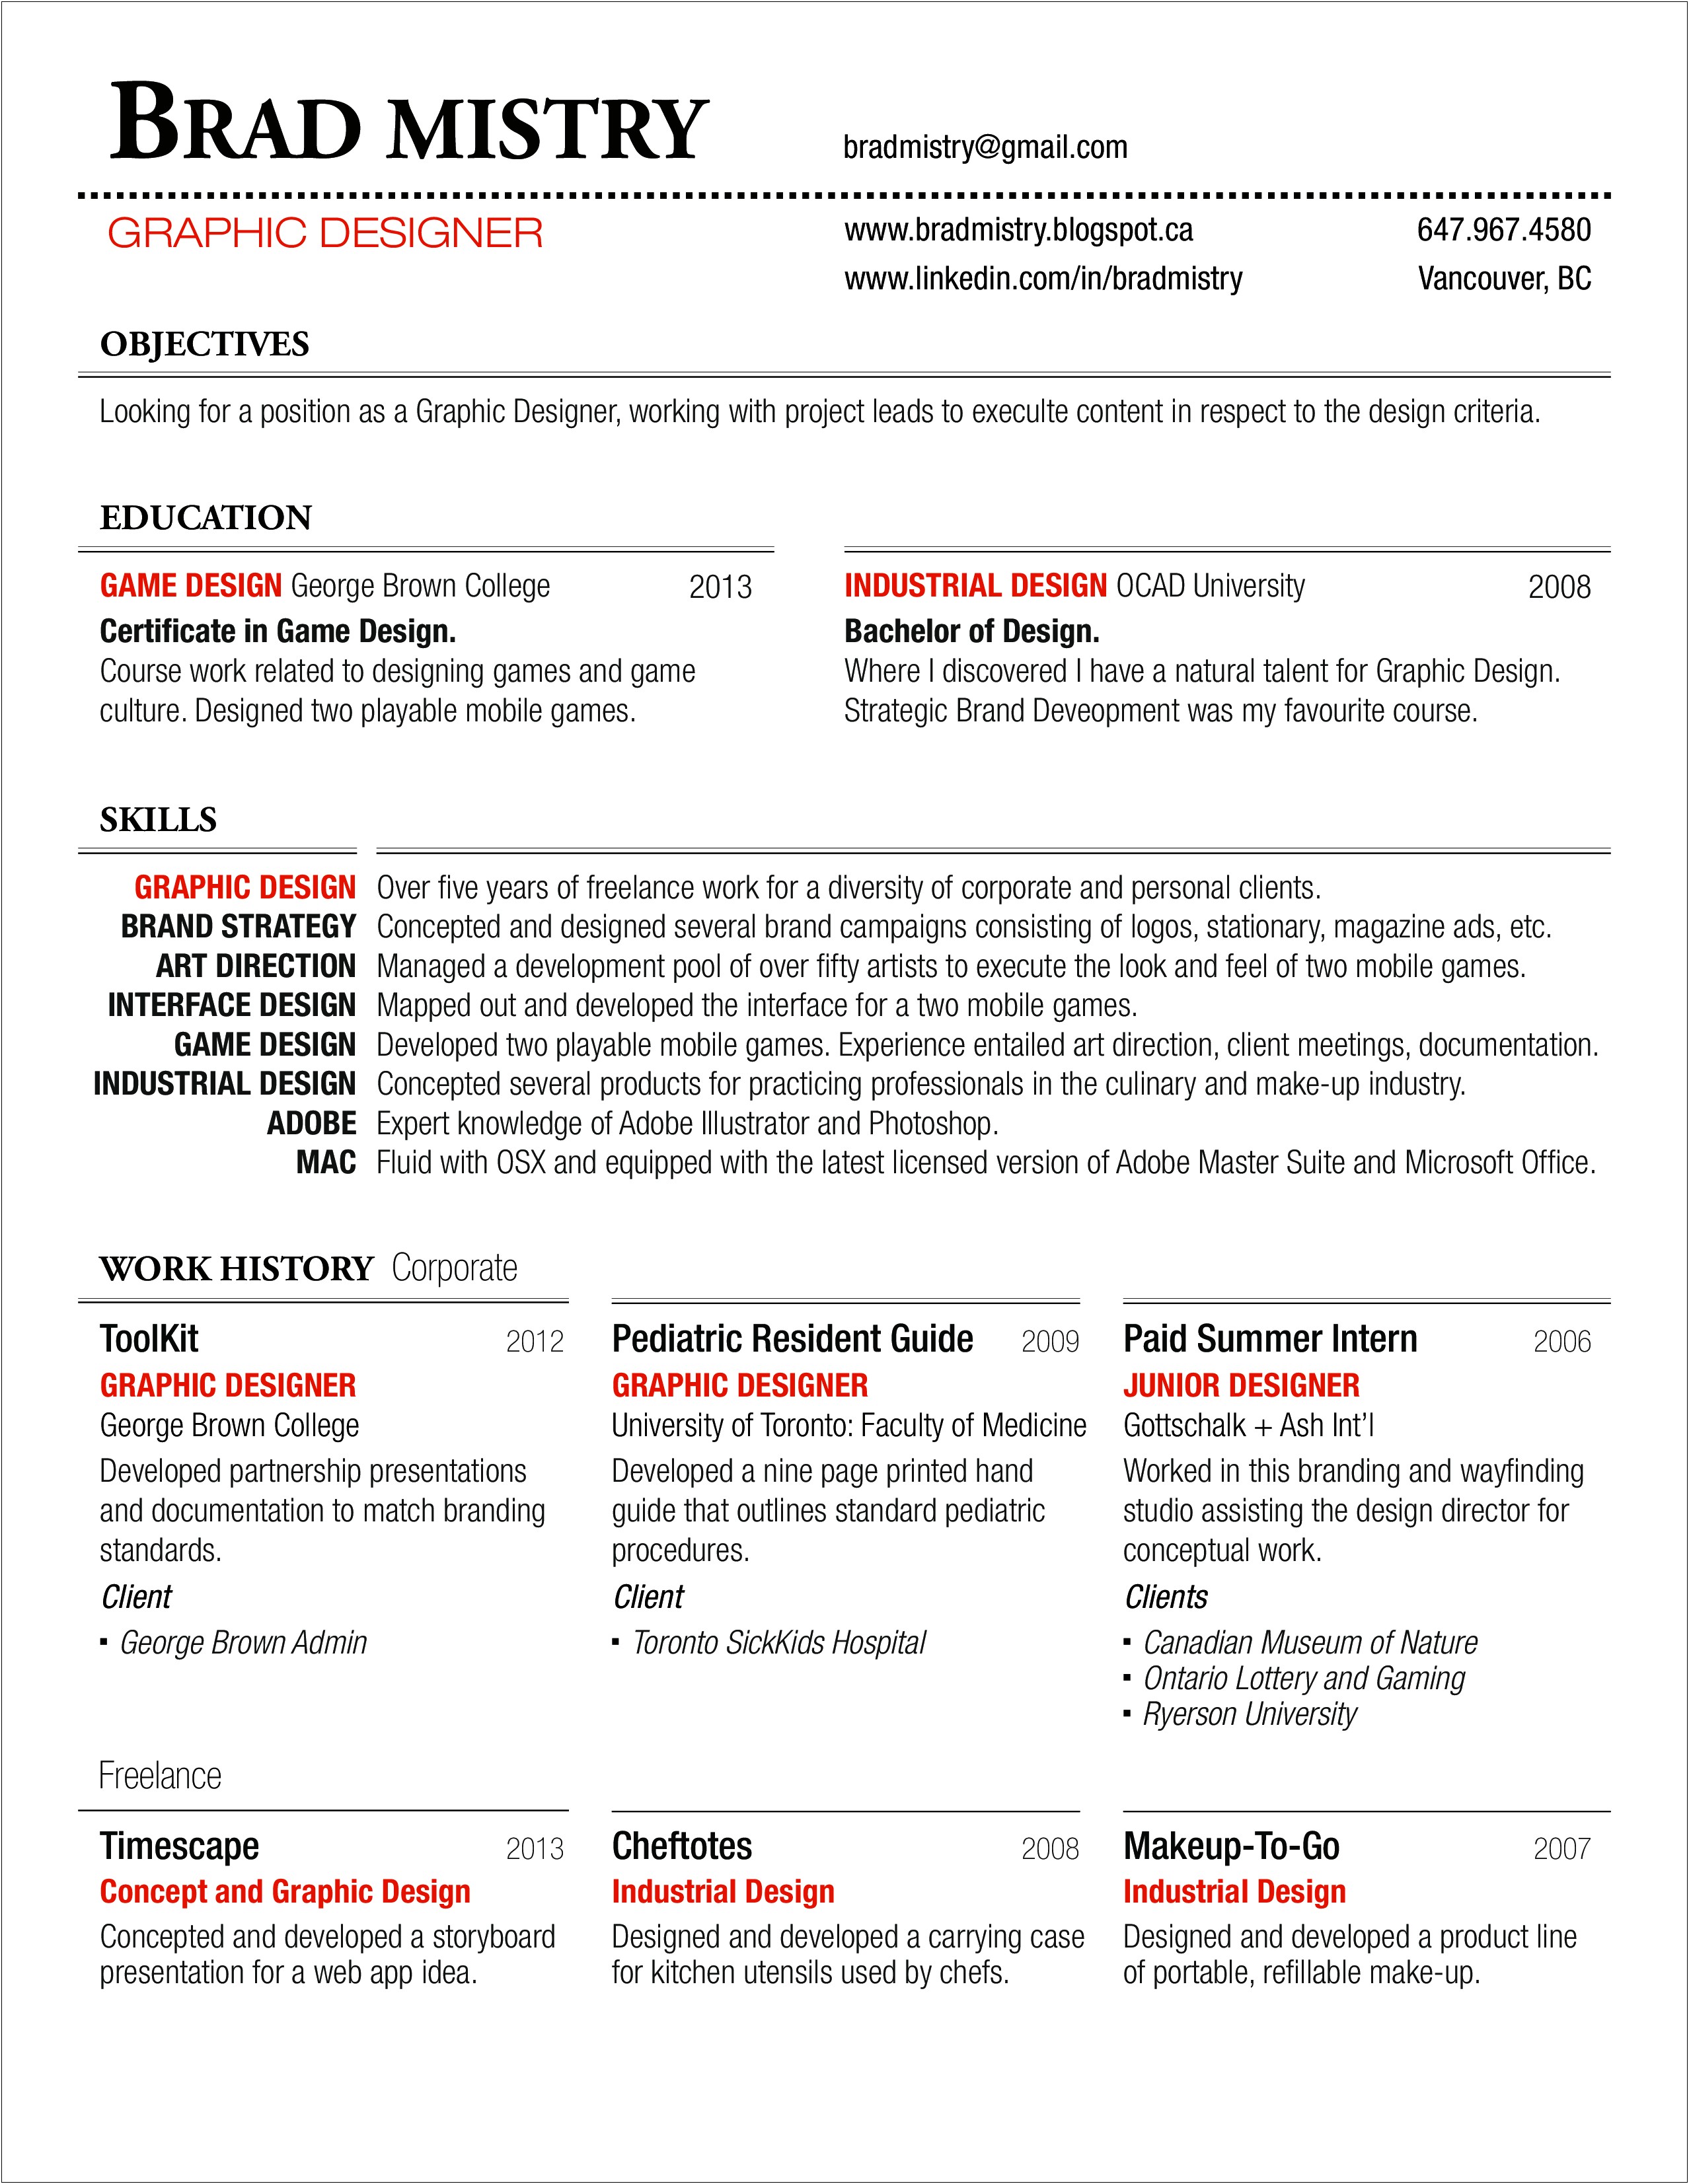 Resume Profile Examples Graphic Designer